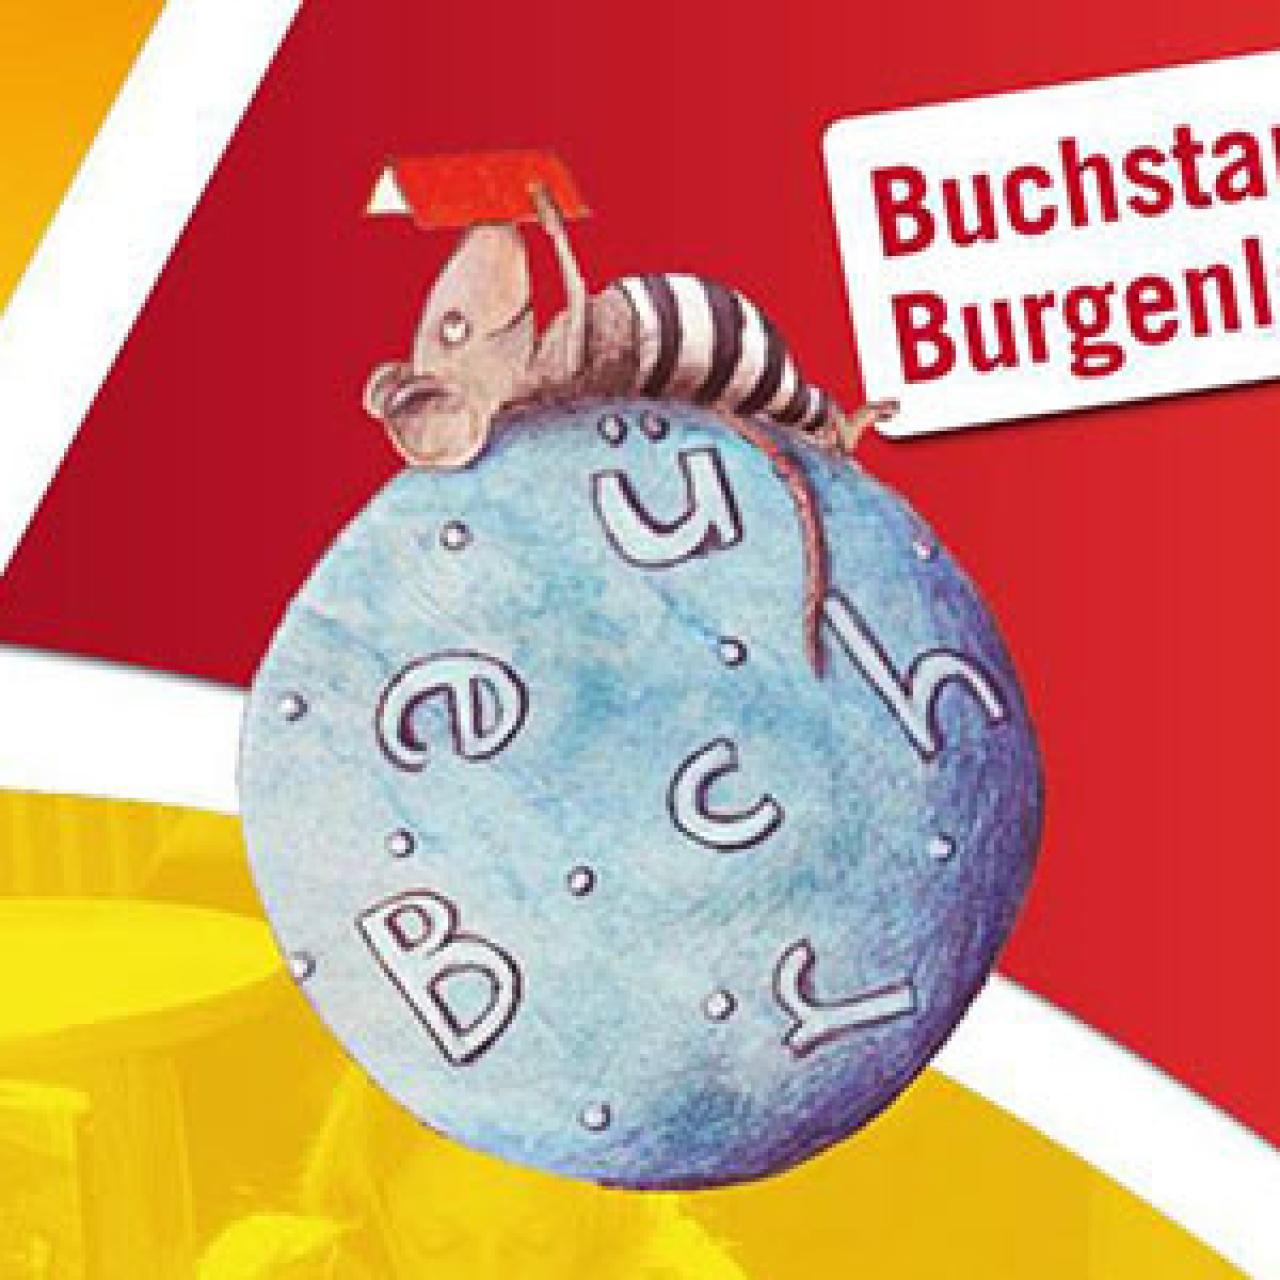 Buchstart Burgenland